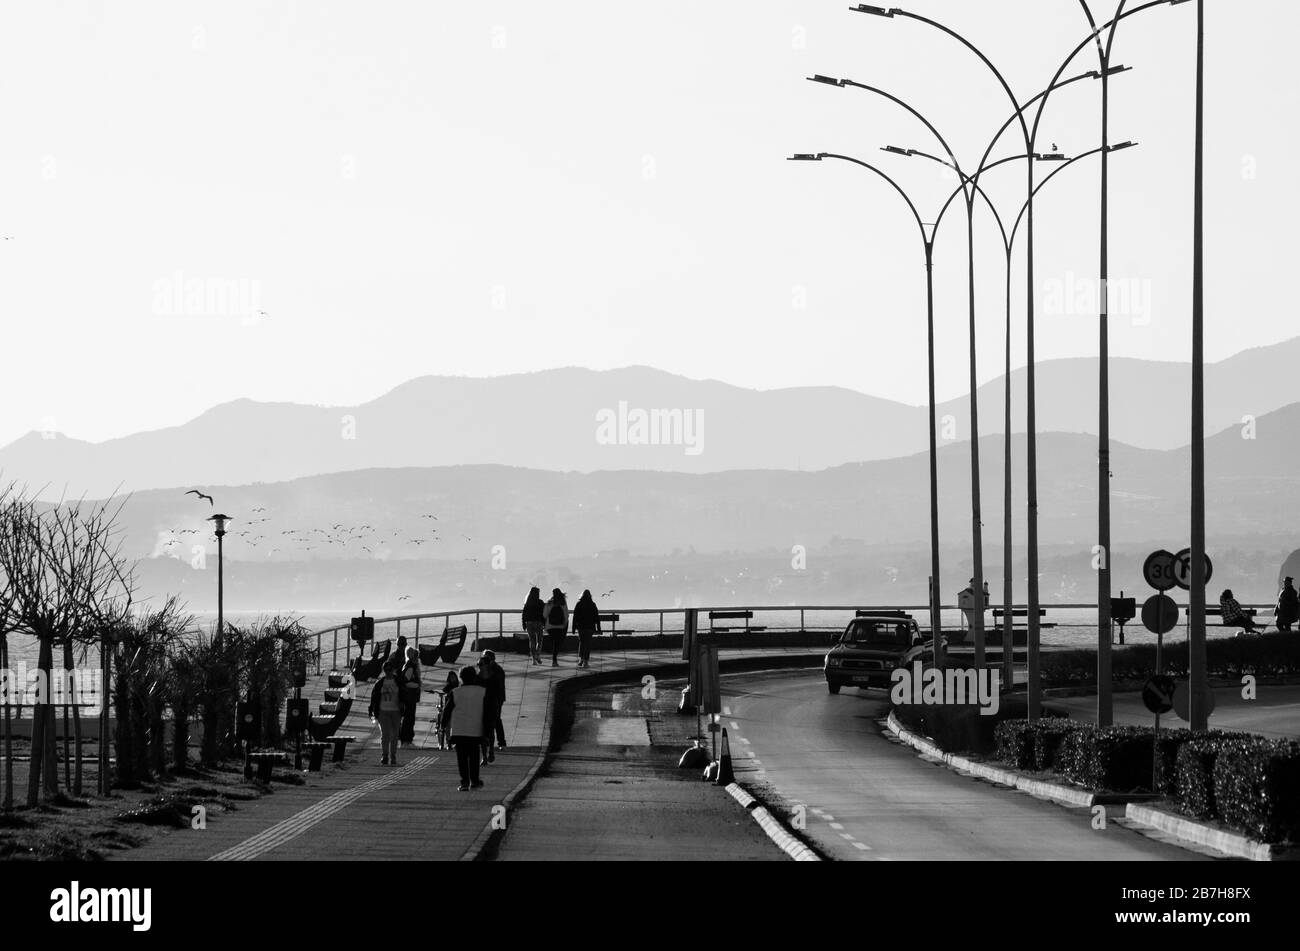 Persone sul lungomare nella città costiera settentrionale di Alexandroupoli Evros Grecia Foto Stock